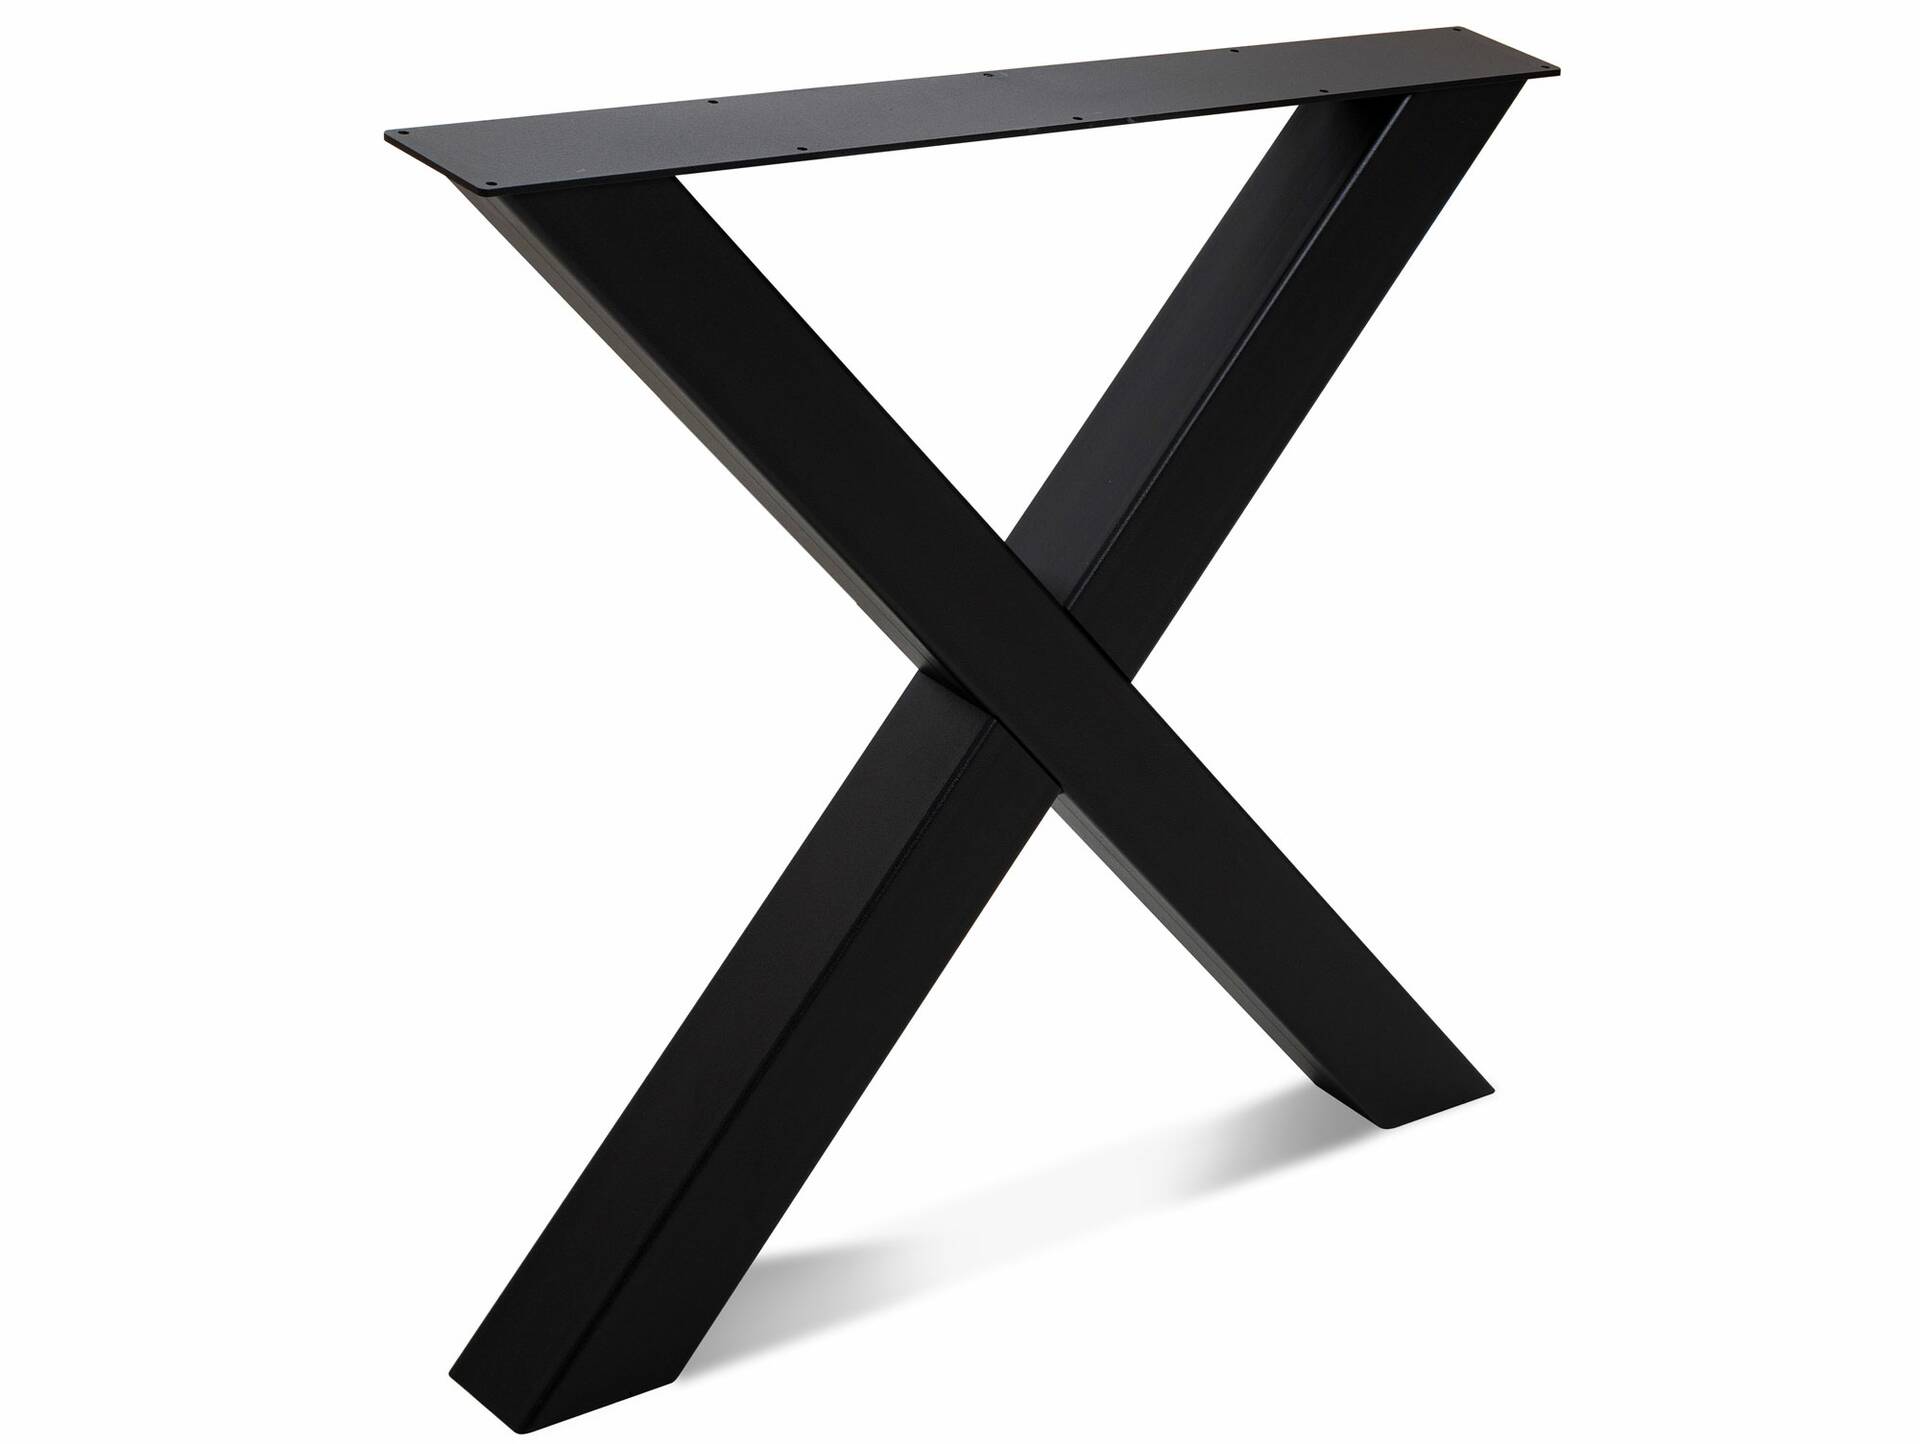 1 PAAR X-Beine für Esstisch, Material Stahl, schwarz 80 cm